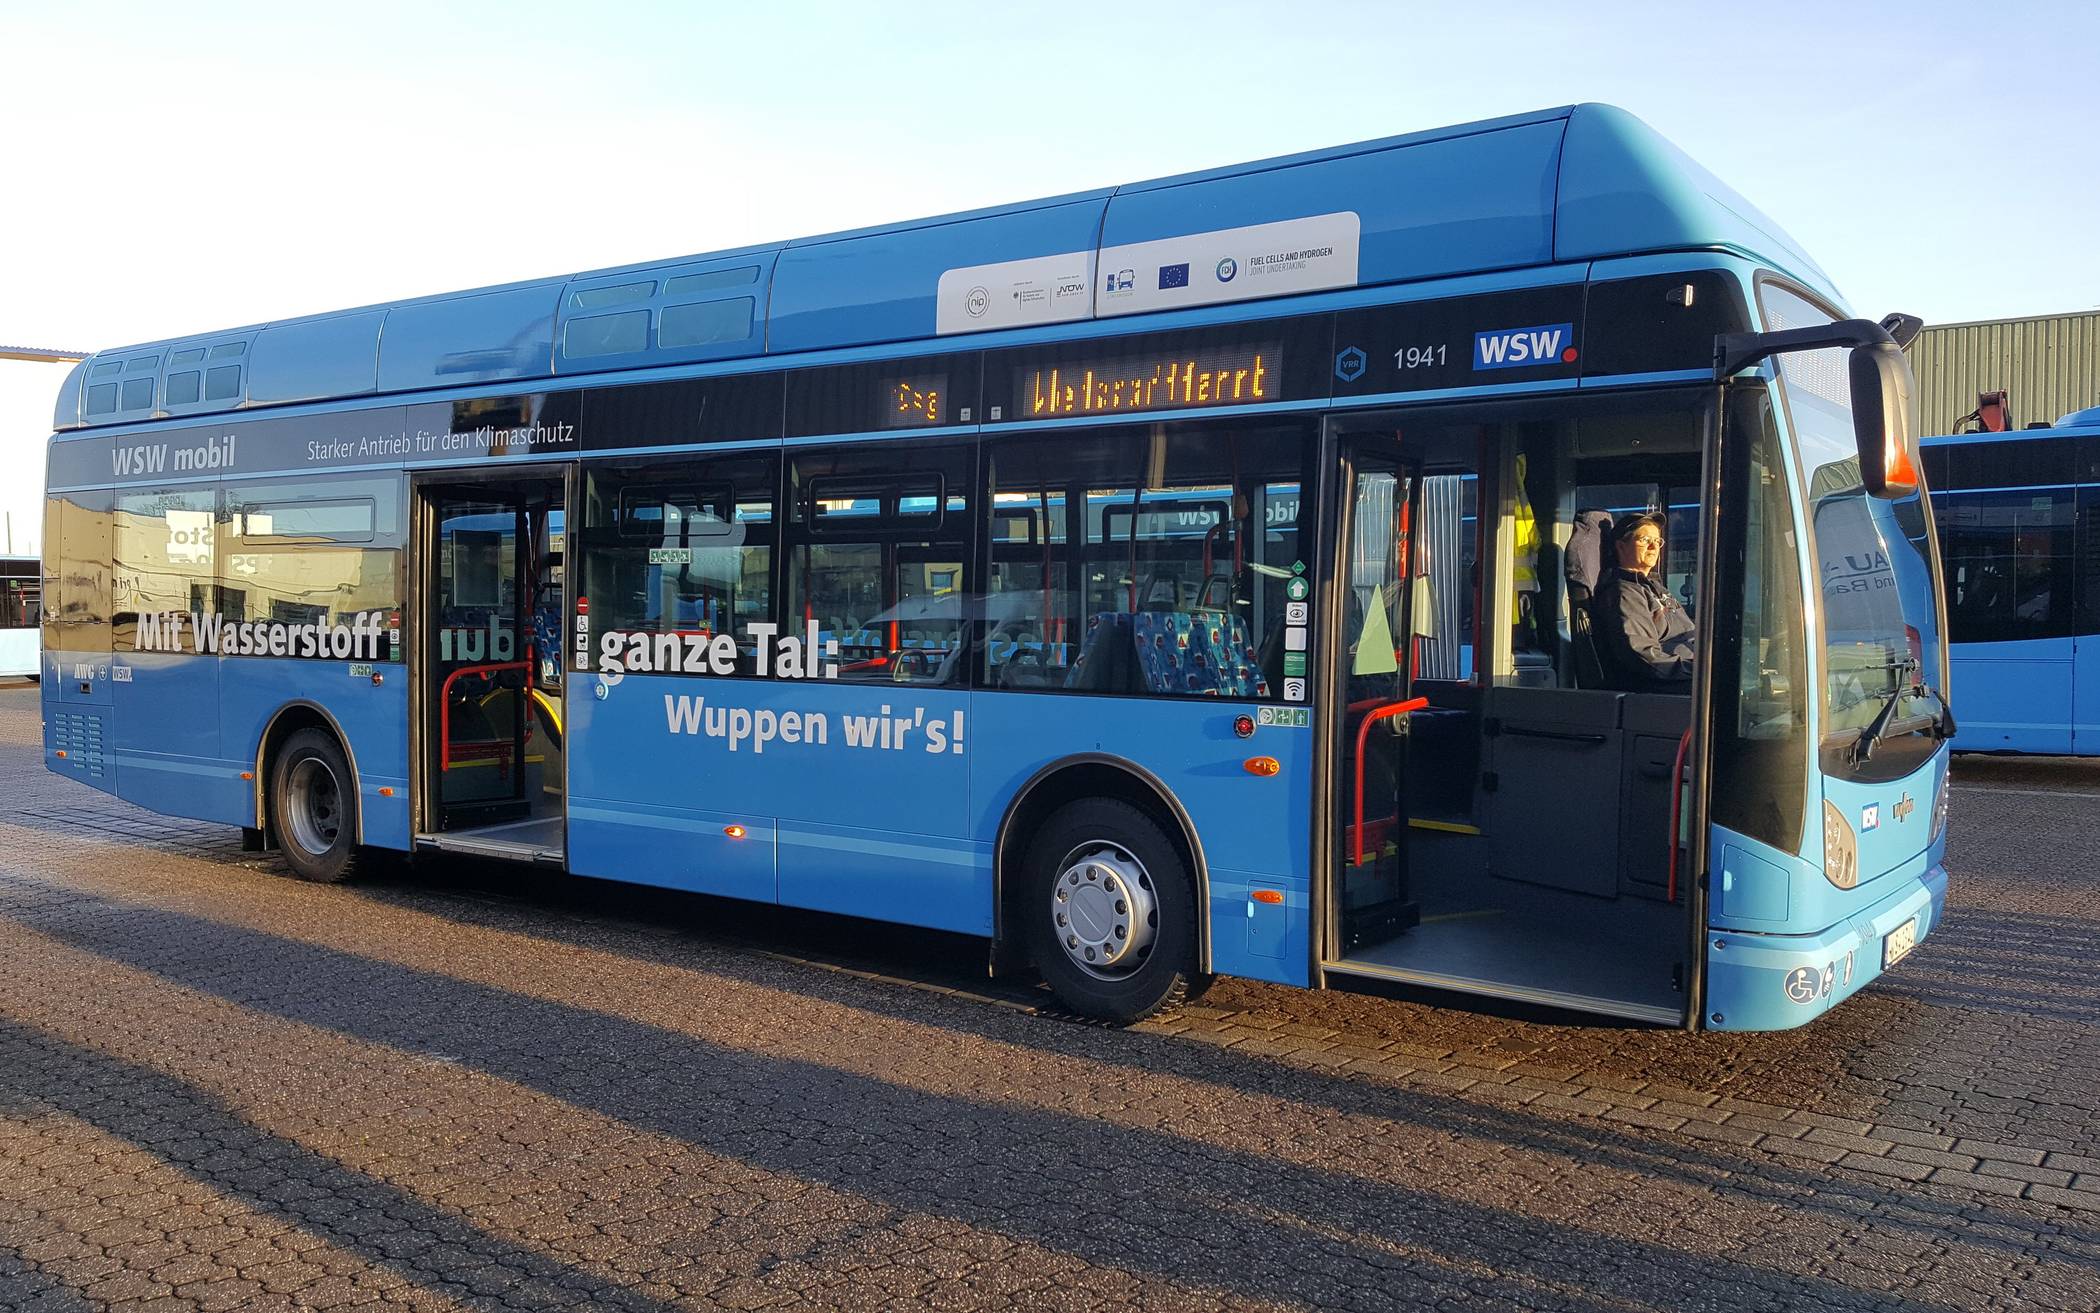 Der Wasserstoff-Bus ist zwar blau, aber,